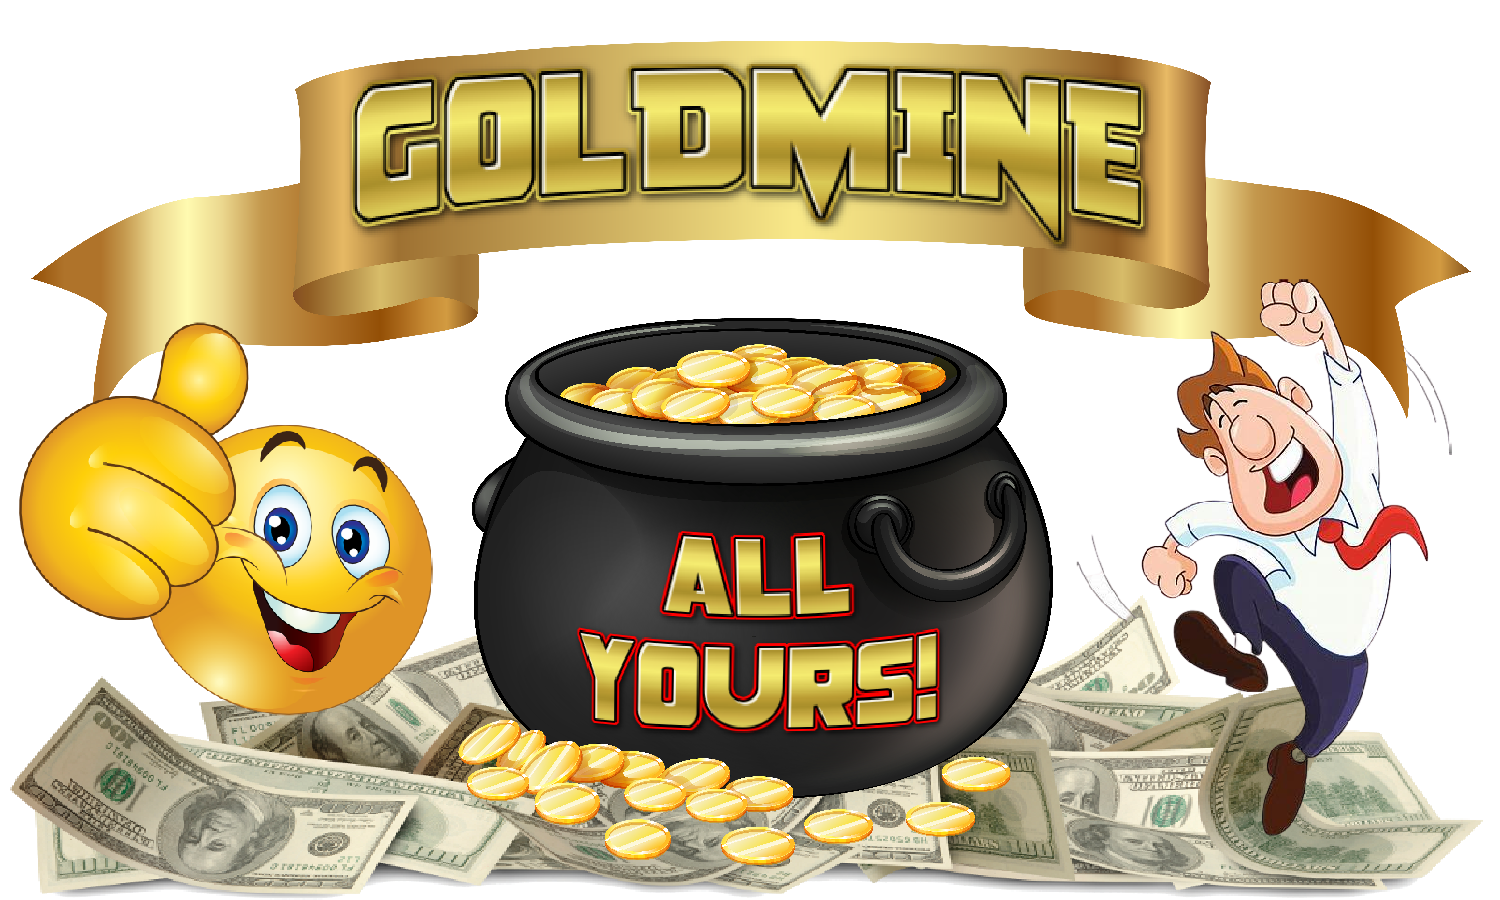 http://besteasywork.com/Goldmine.PNG